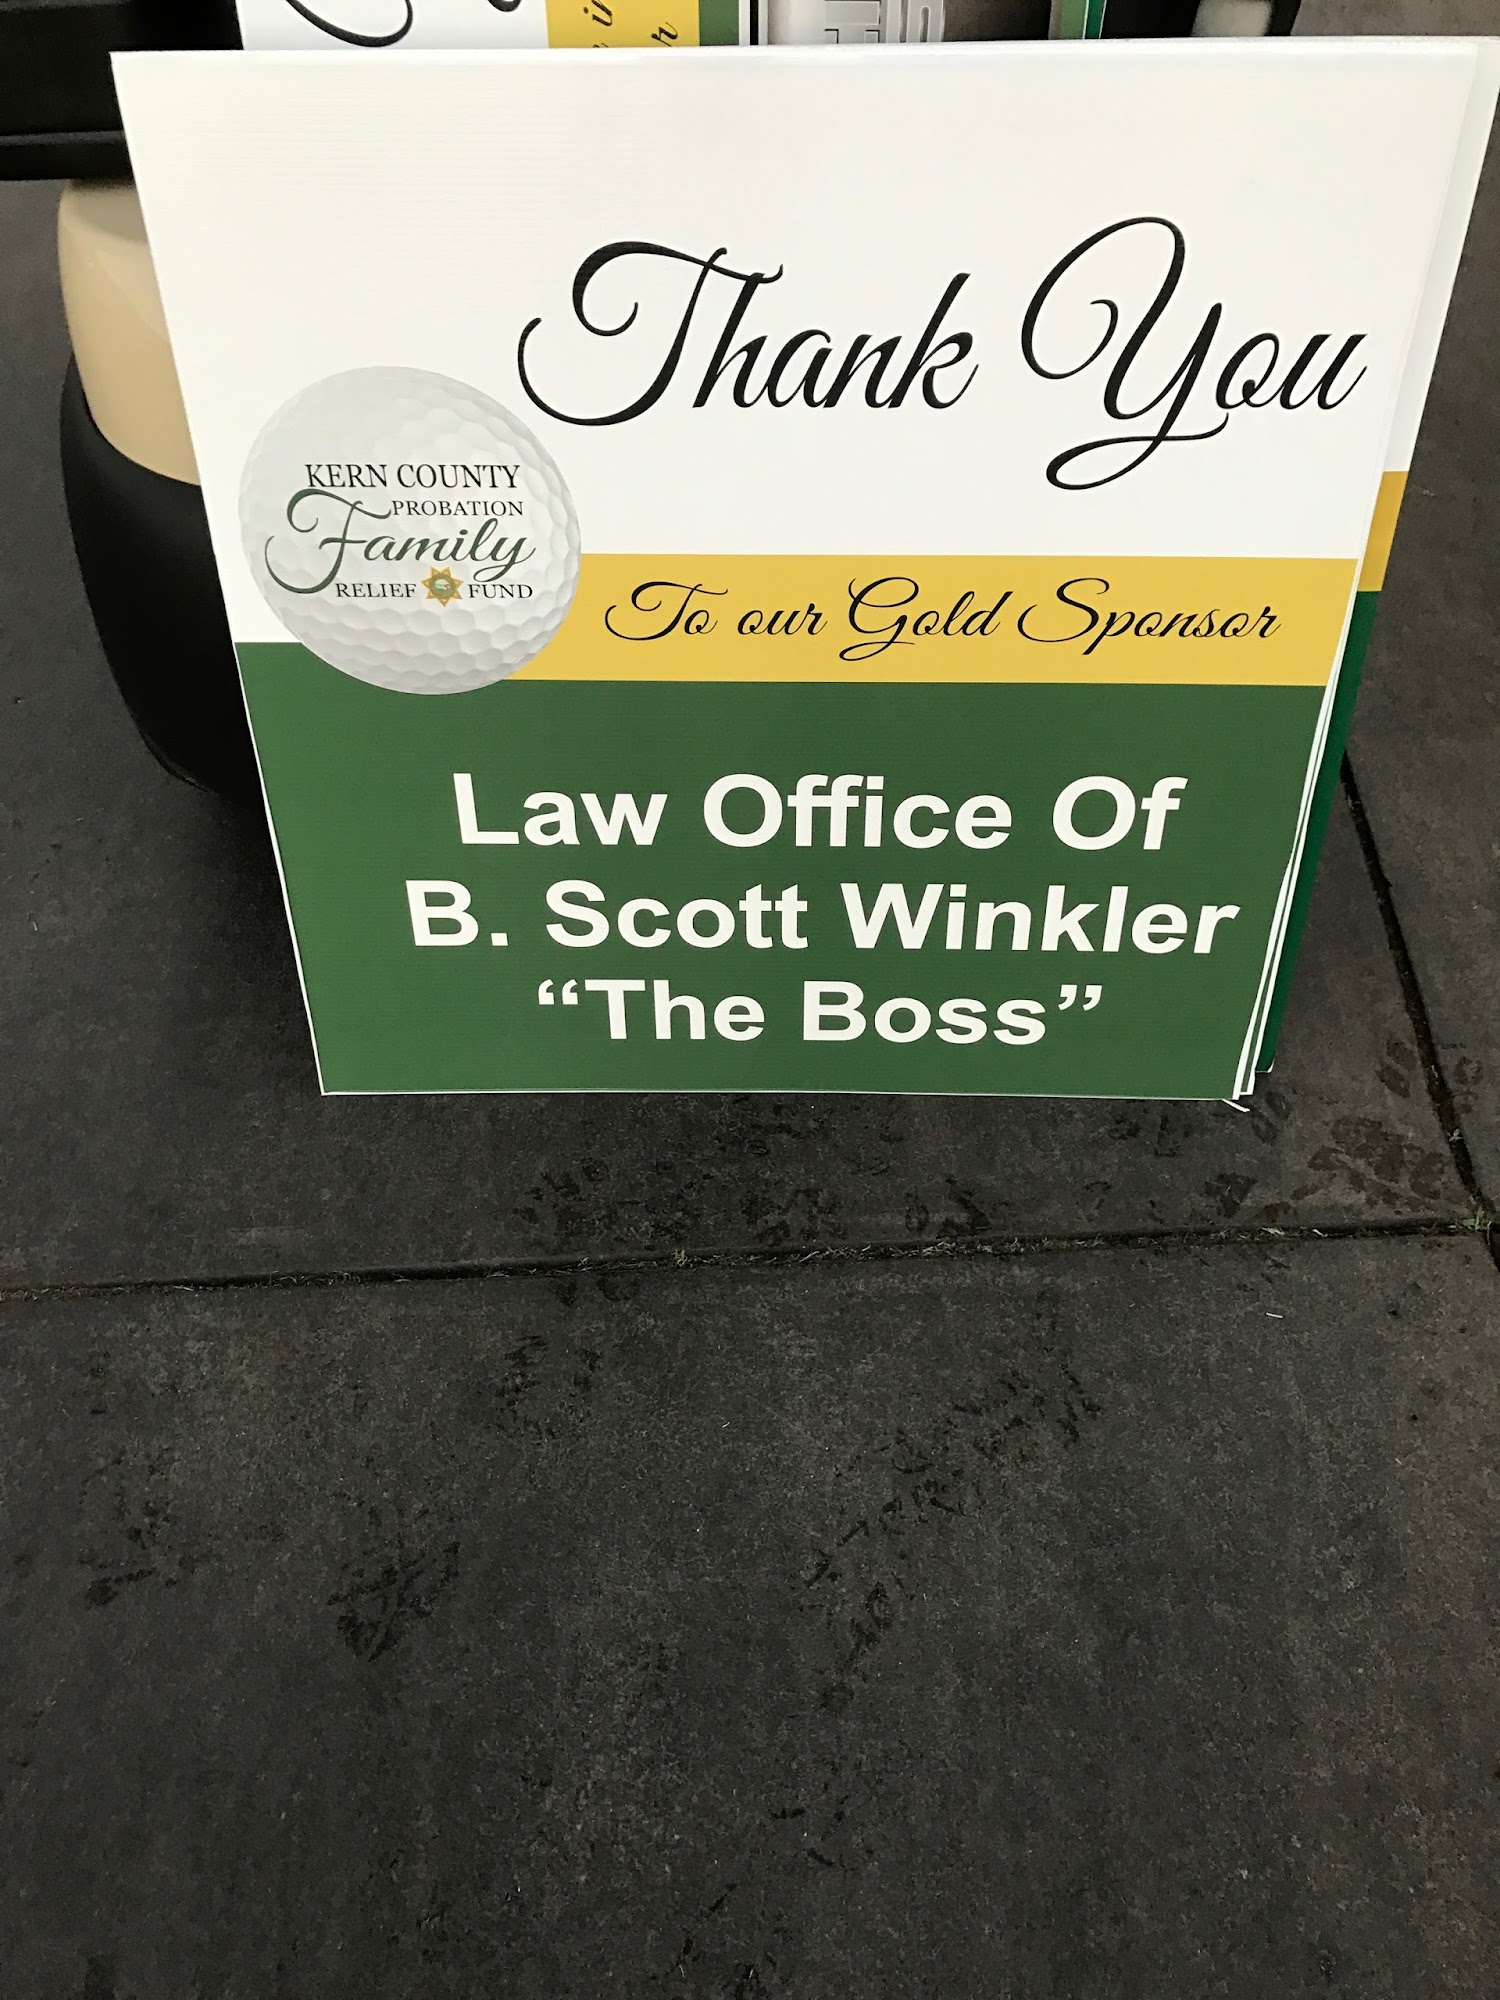 Law Offices of B. Scott Winkler 422 James St, Shafter California 93263